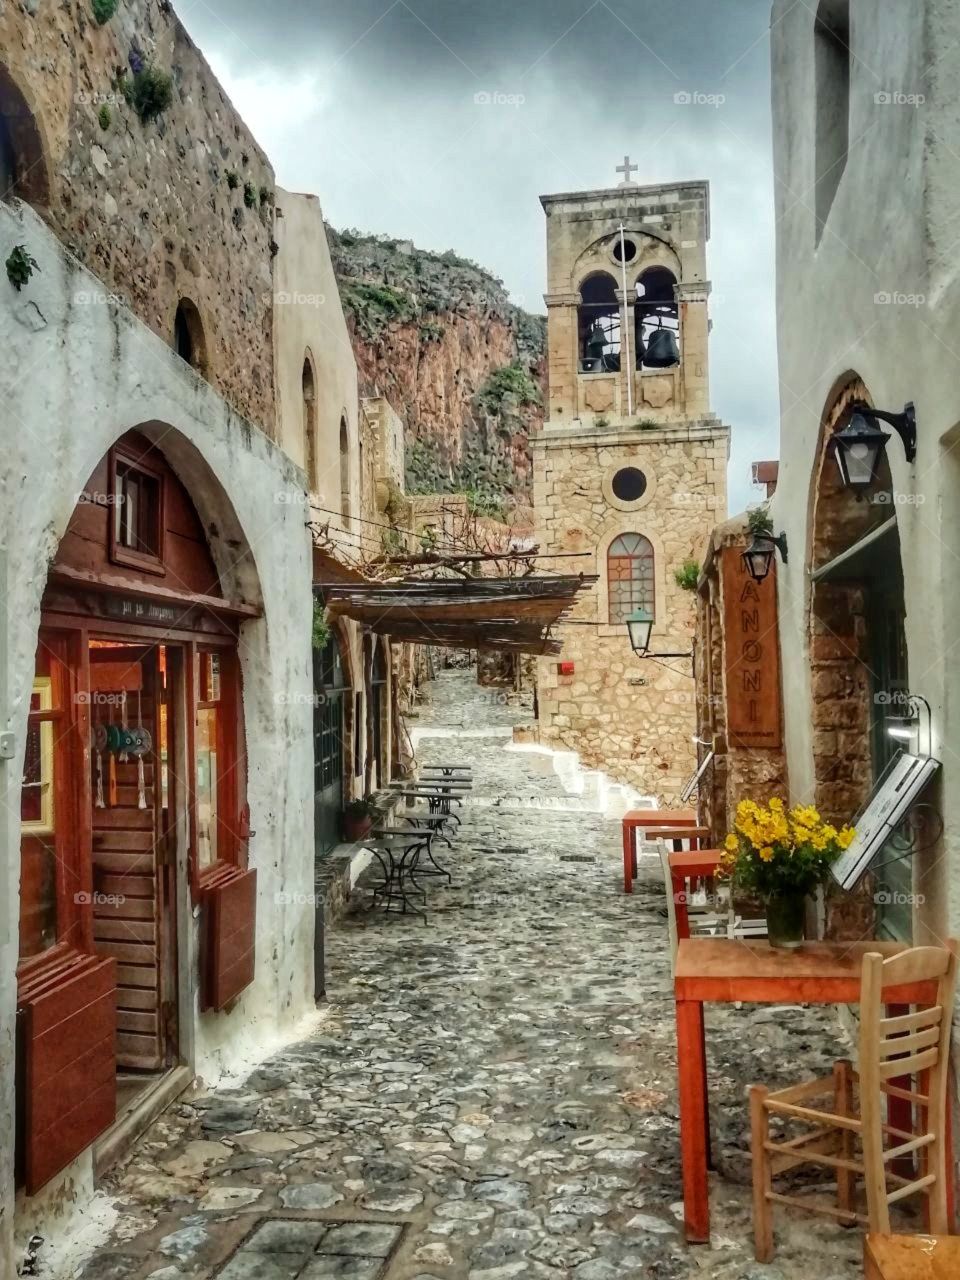 Vintage style in a Greek village!